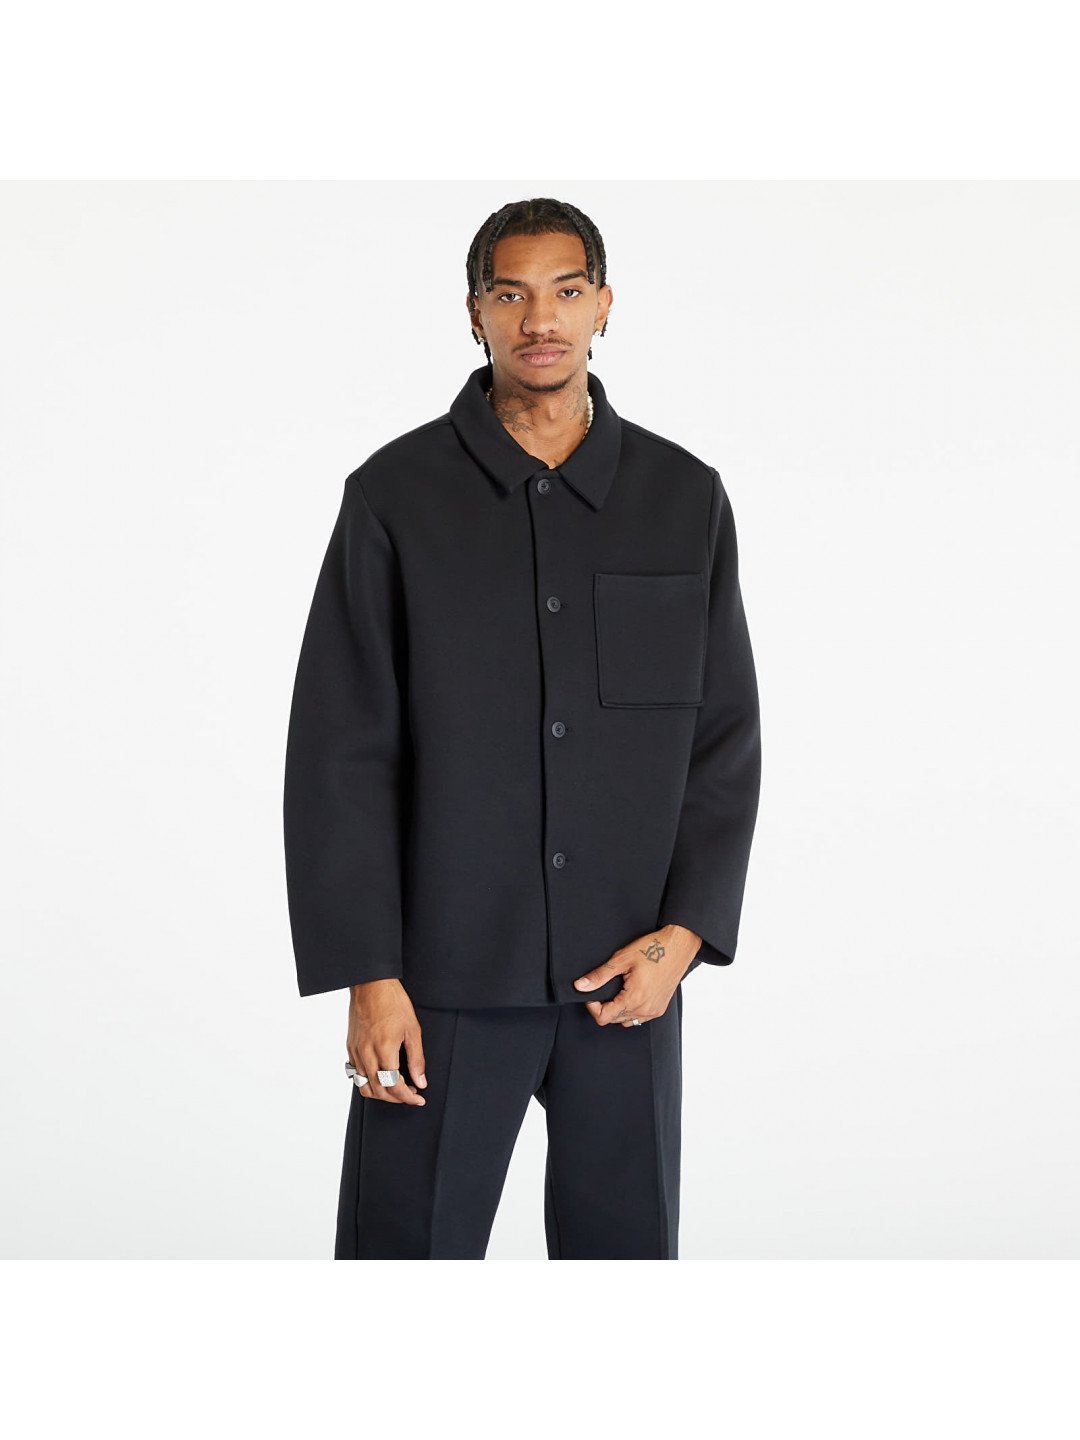 Nike Tech Fleece Reimagined Jacket Black